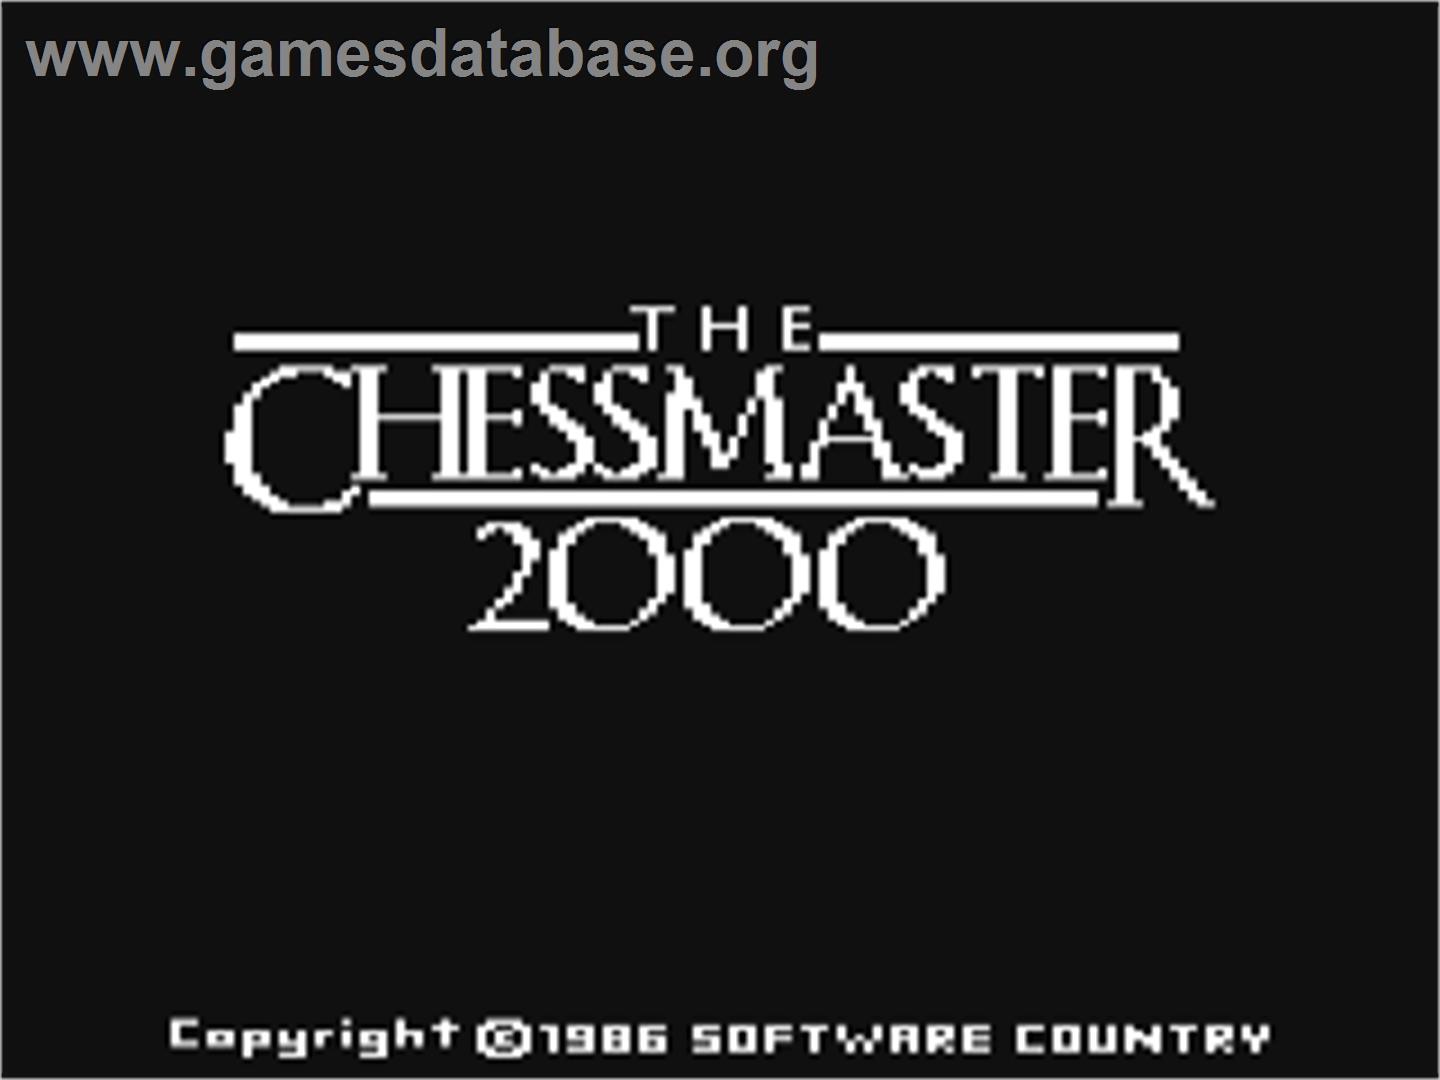 The Chessmaster 2000 - Commodore 64 - Artwork - Title Screen